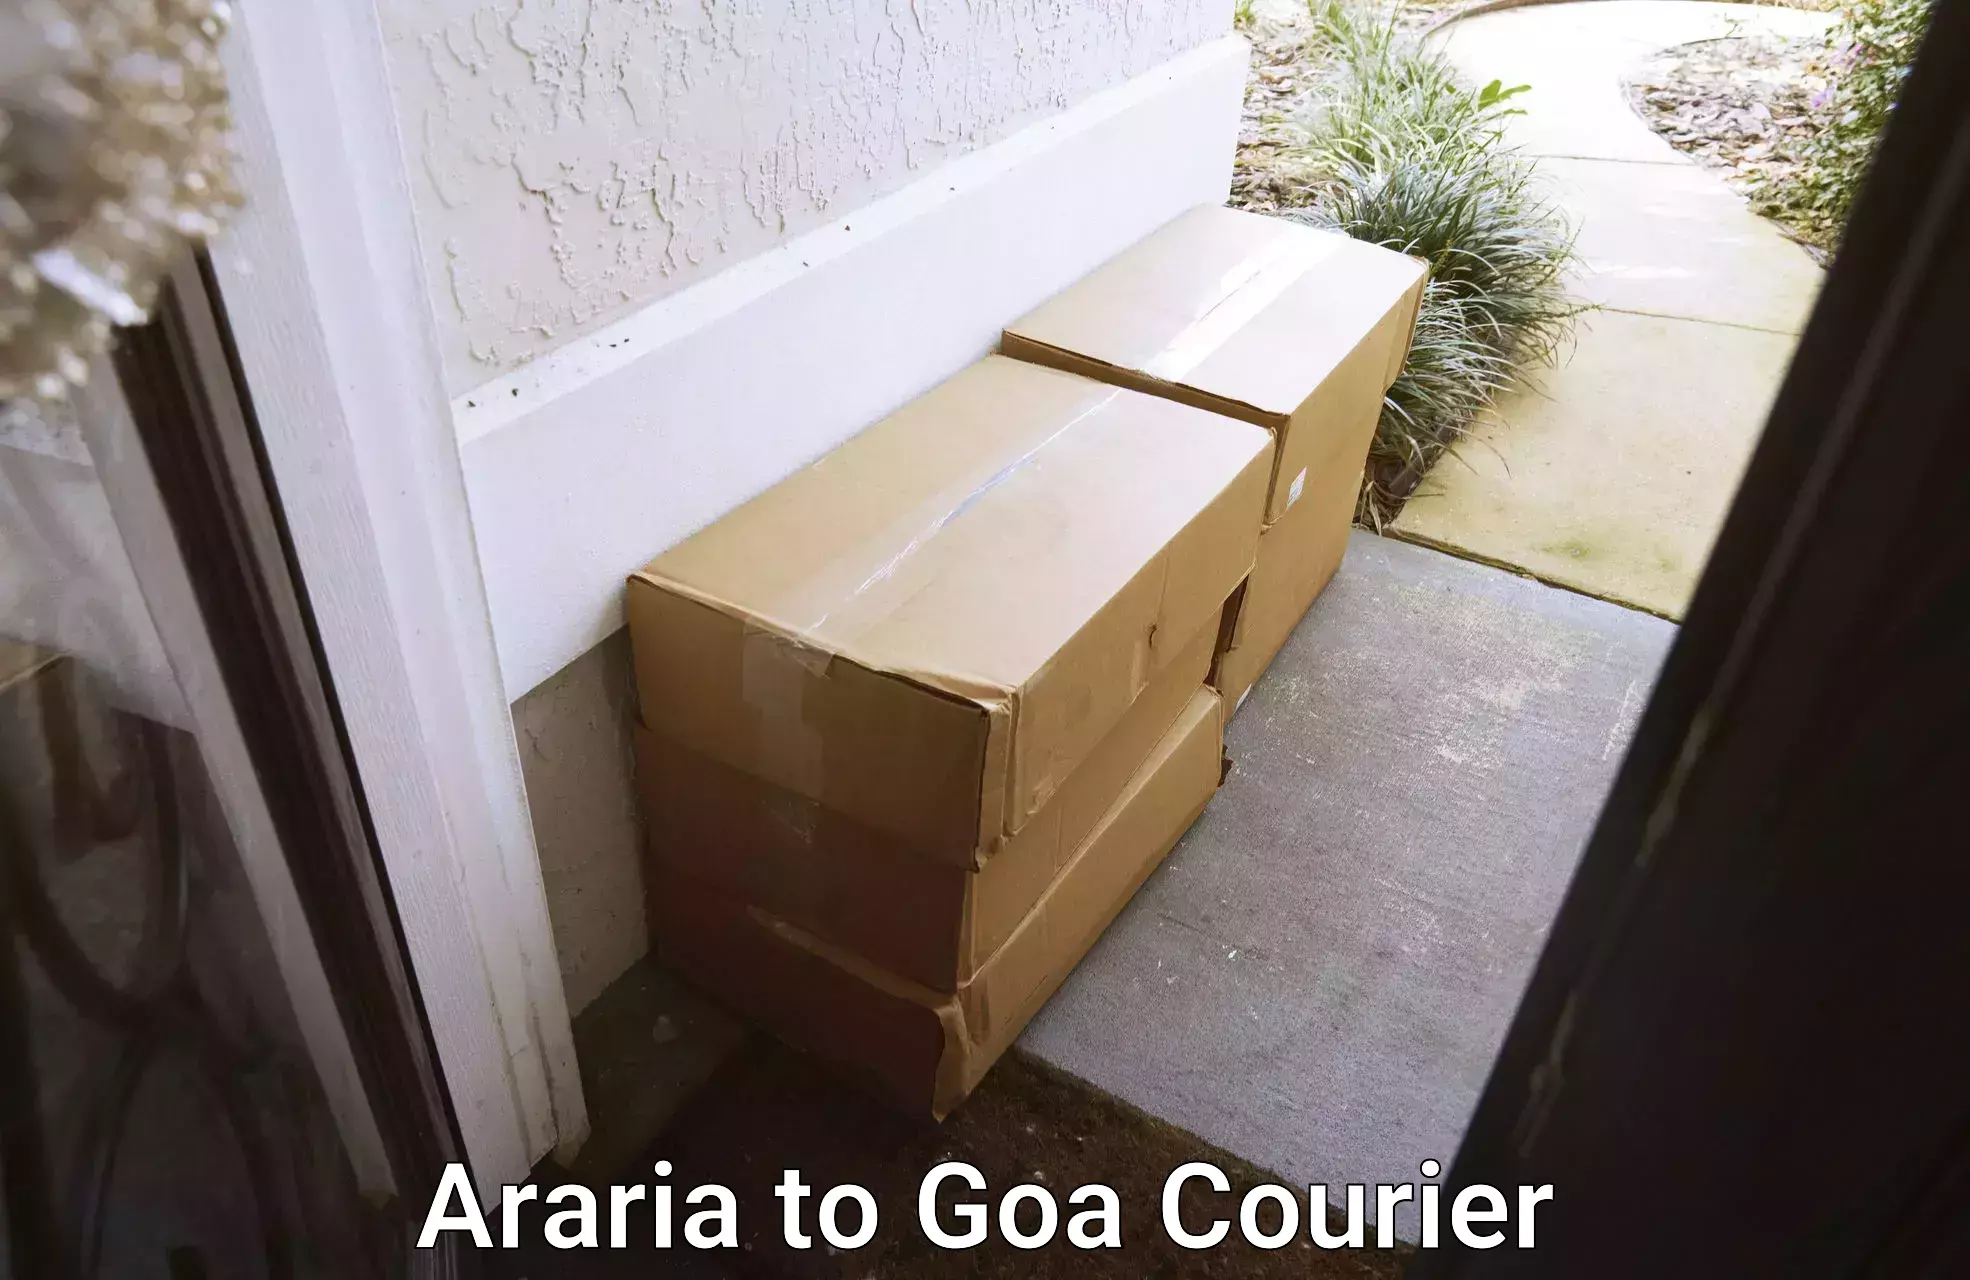 Efficient packing services Araria to Vasco da Gama